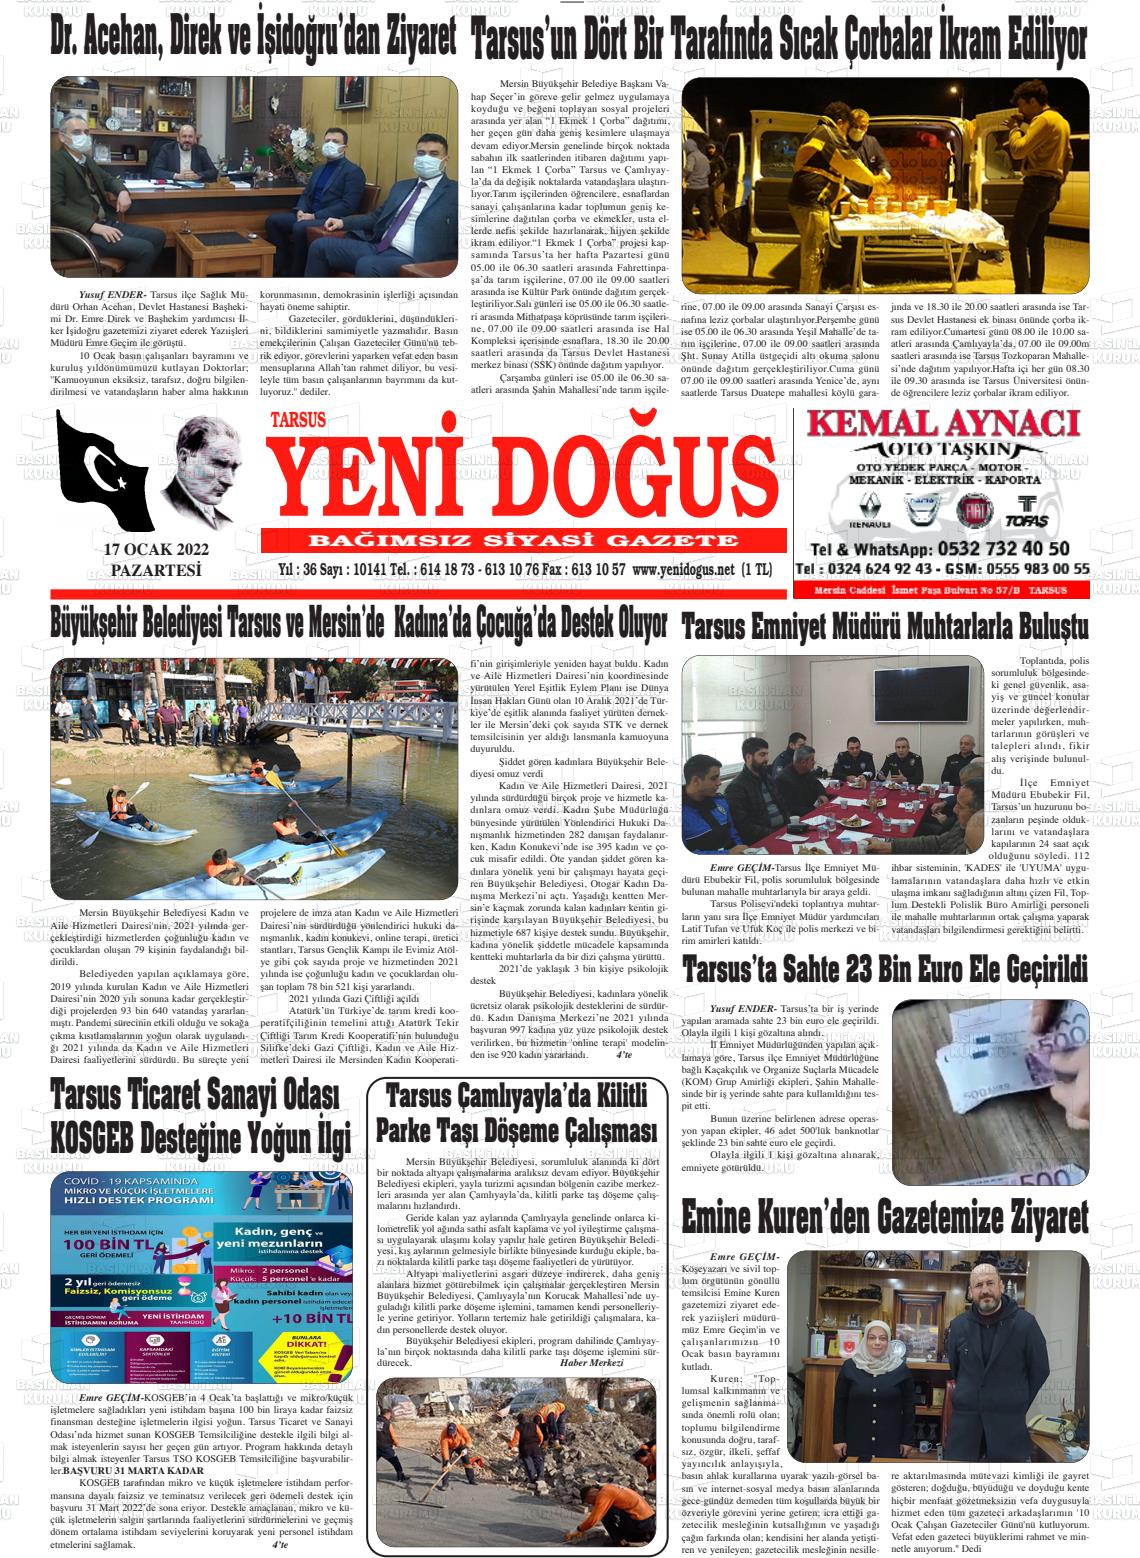 17 Ocak 2022 Tarsus Yeni Doğuş Gazete Manşeti